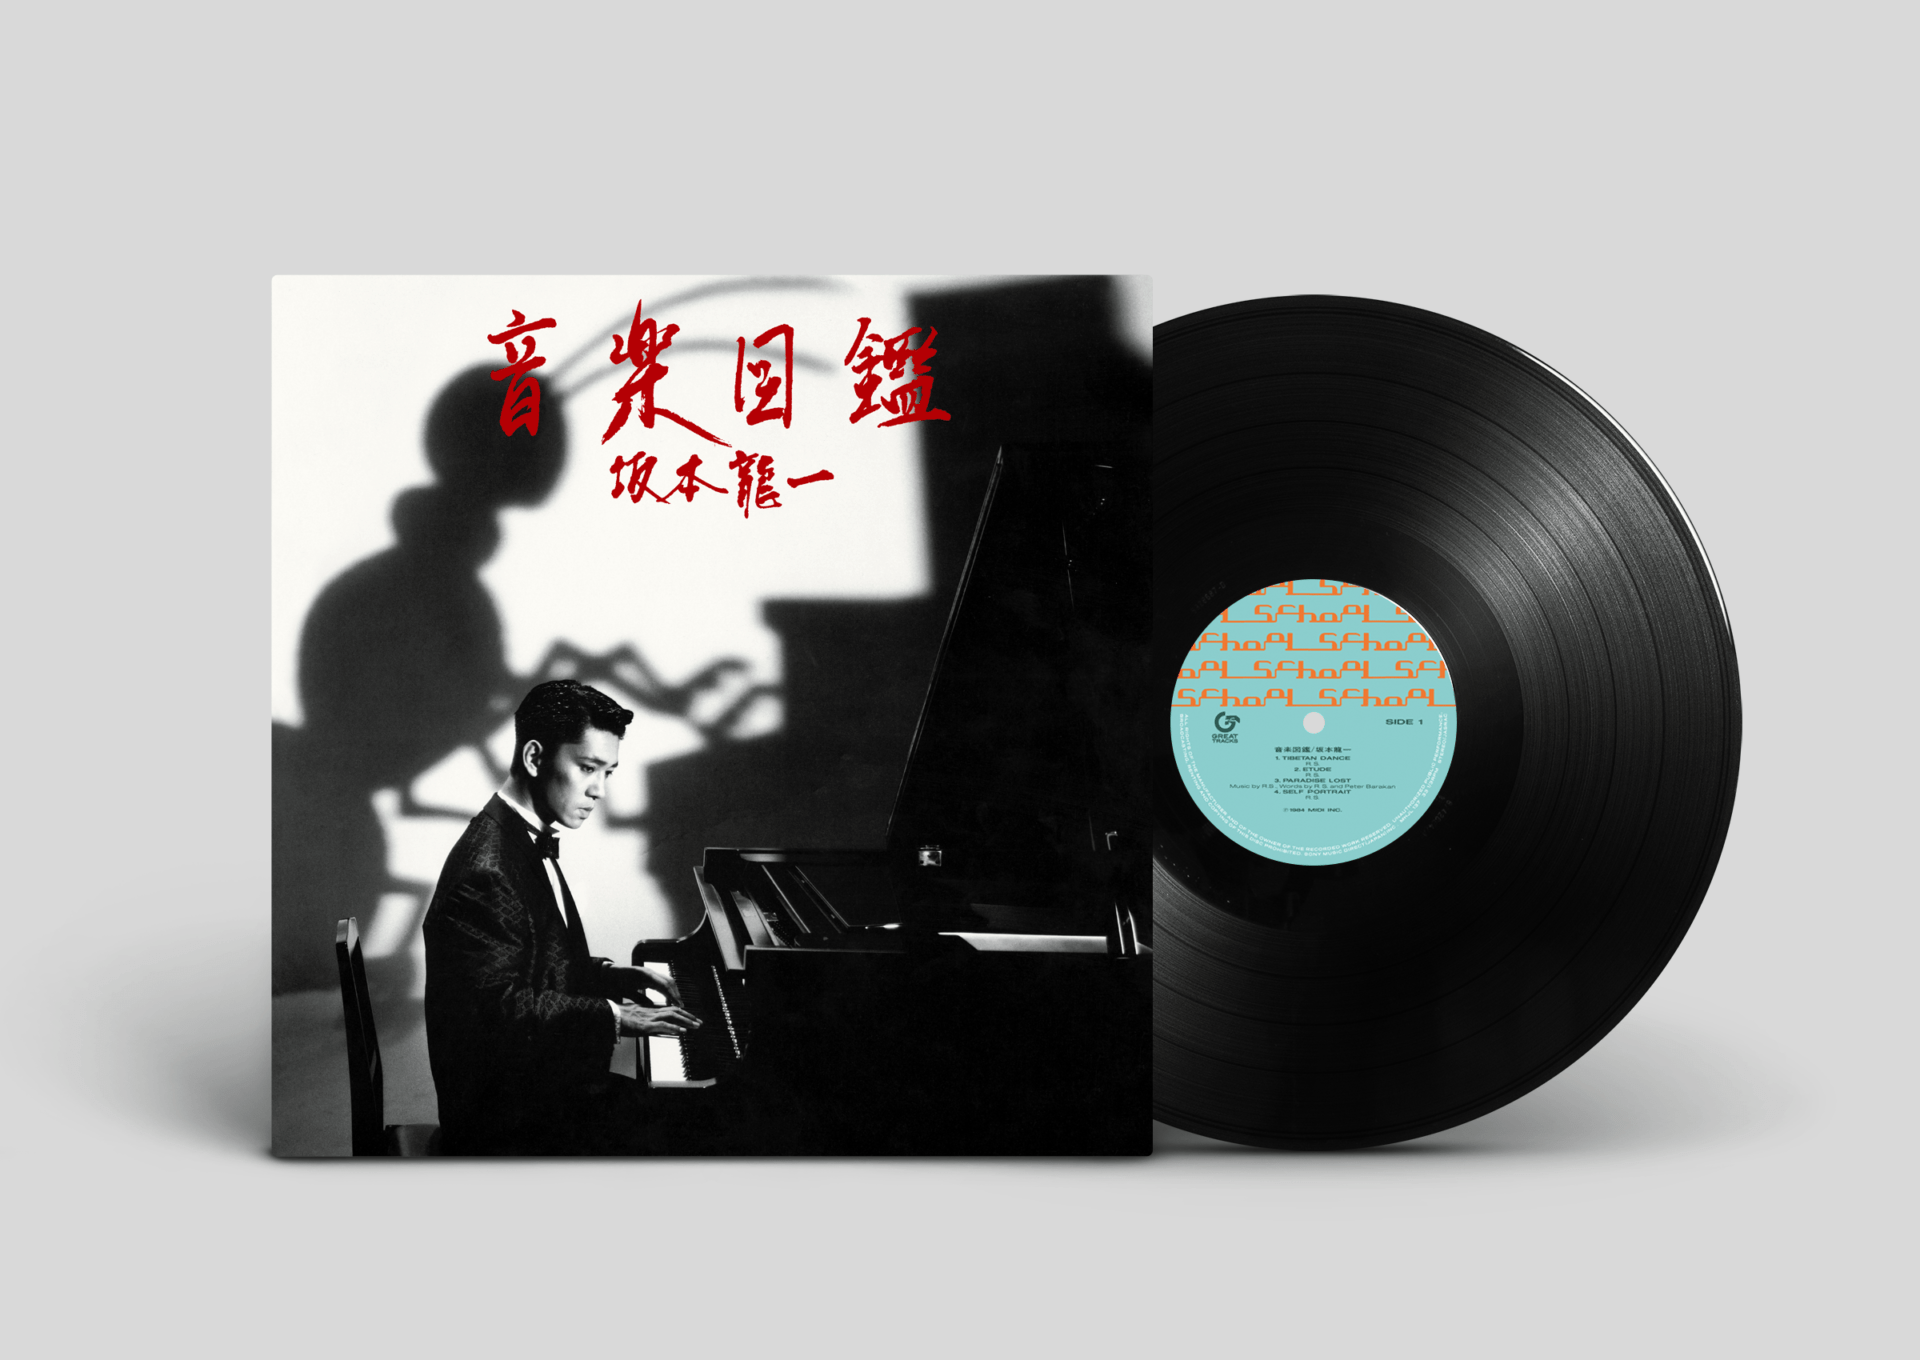 坂本龍一が1984年にリリースした「音楽図鑑」 アナログレコードで 